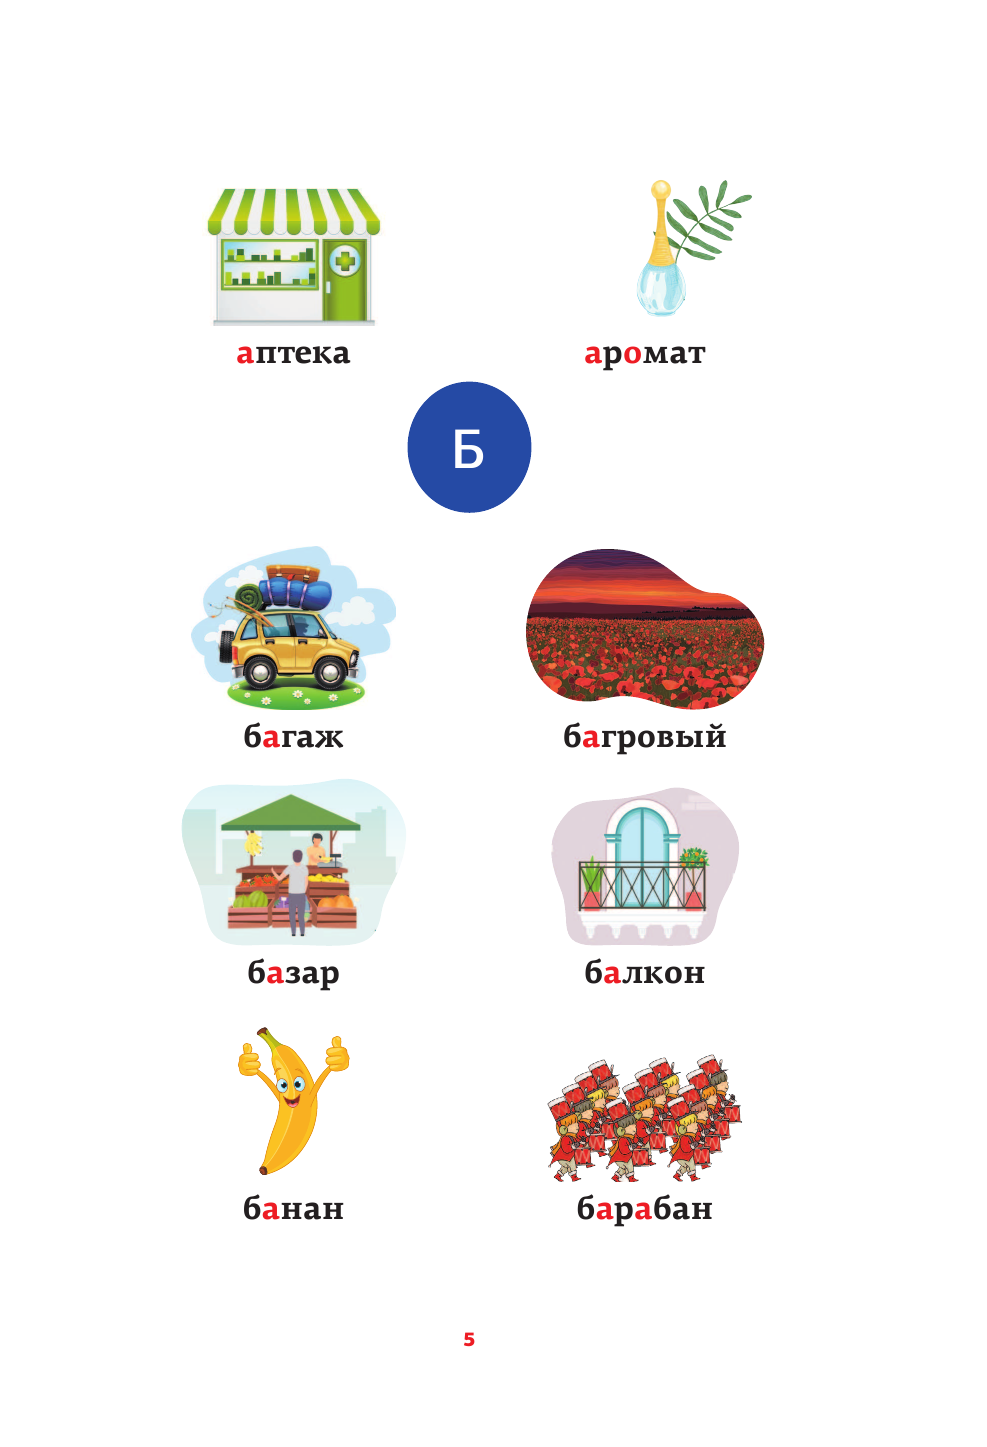  Русский язык: все словарные слова в одной книге - страница 4